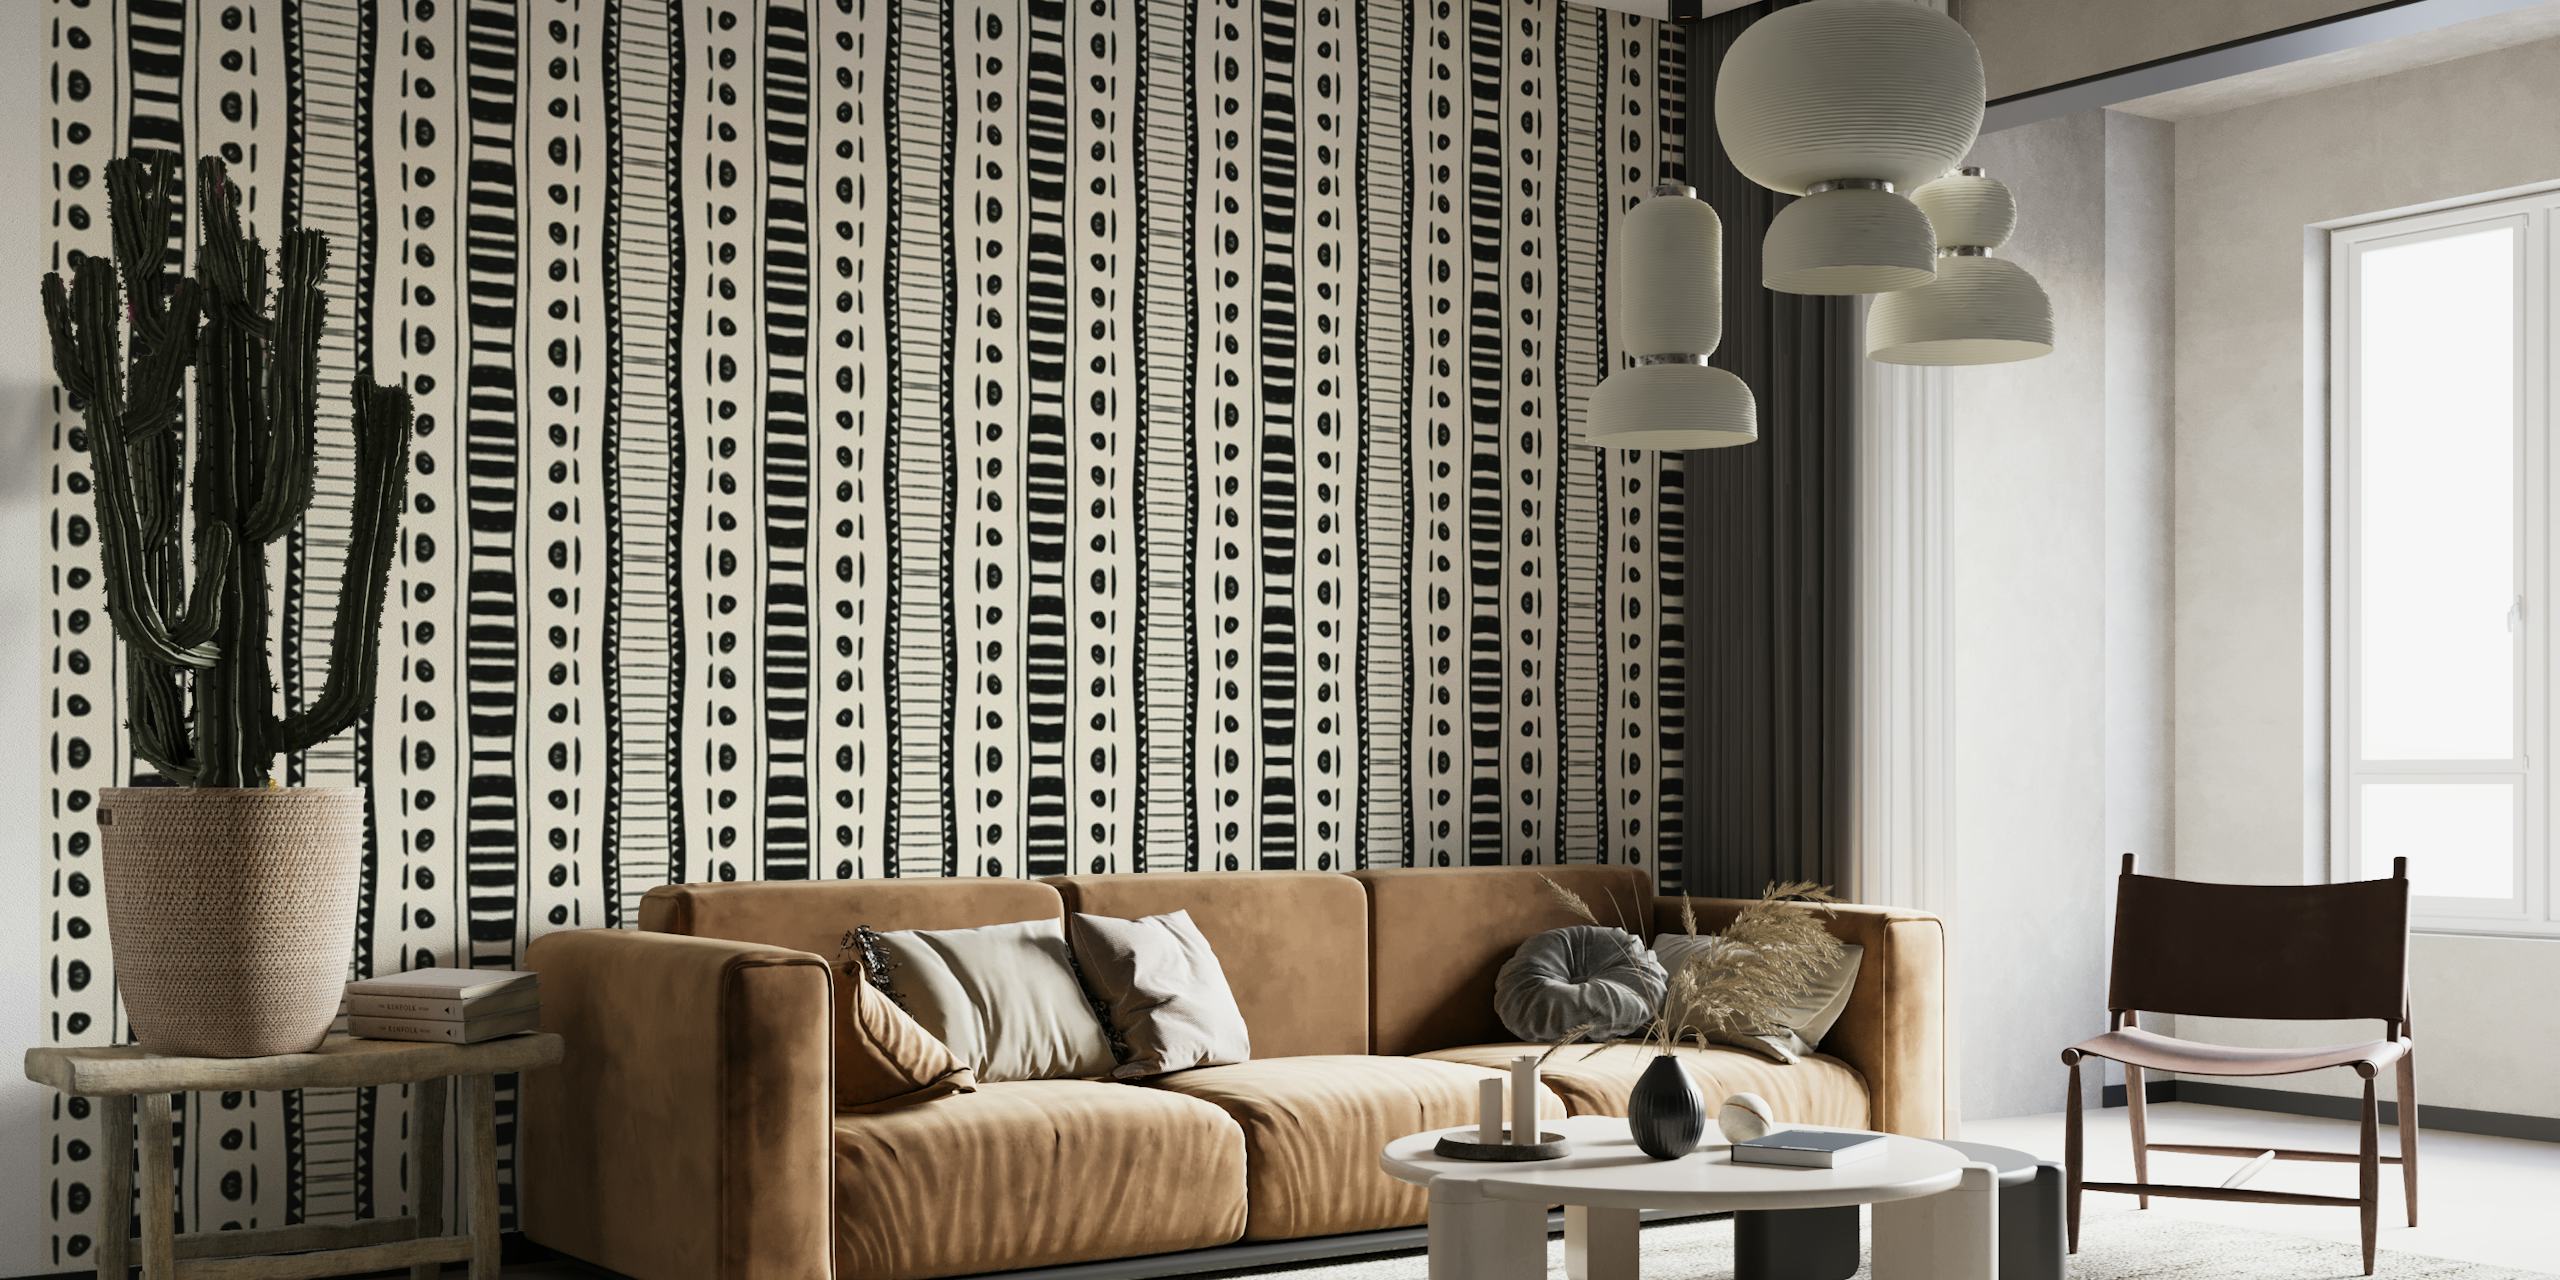 Unique Tribal Black and White Wallpaper design